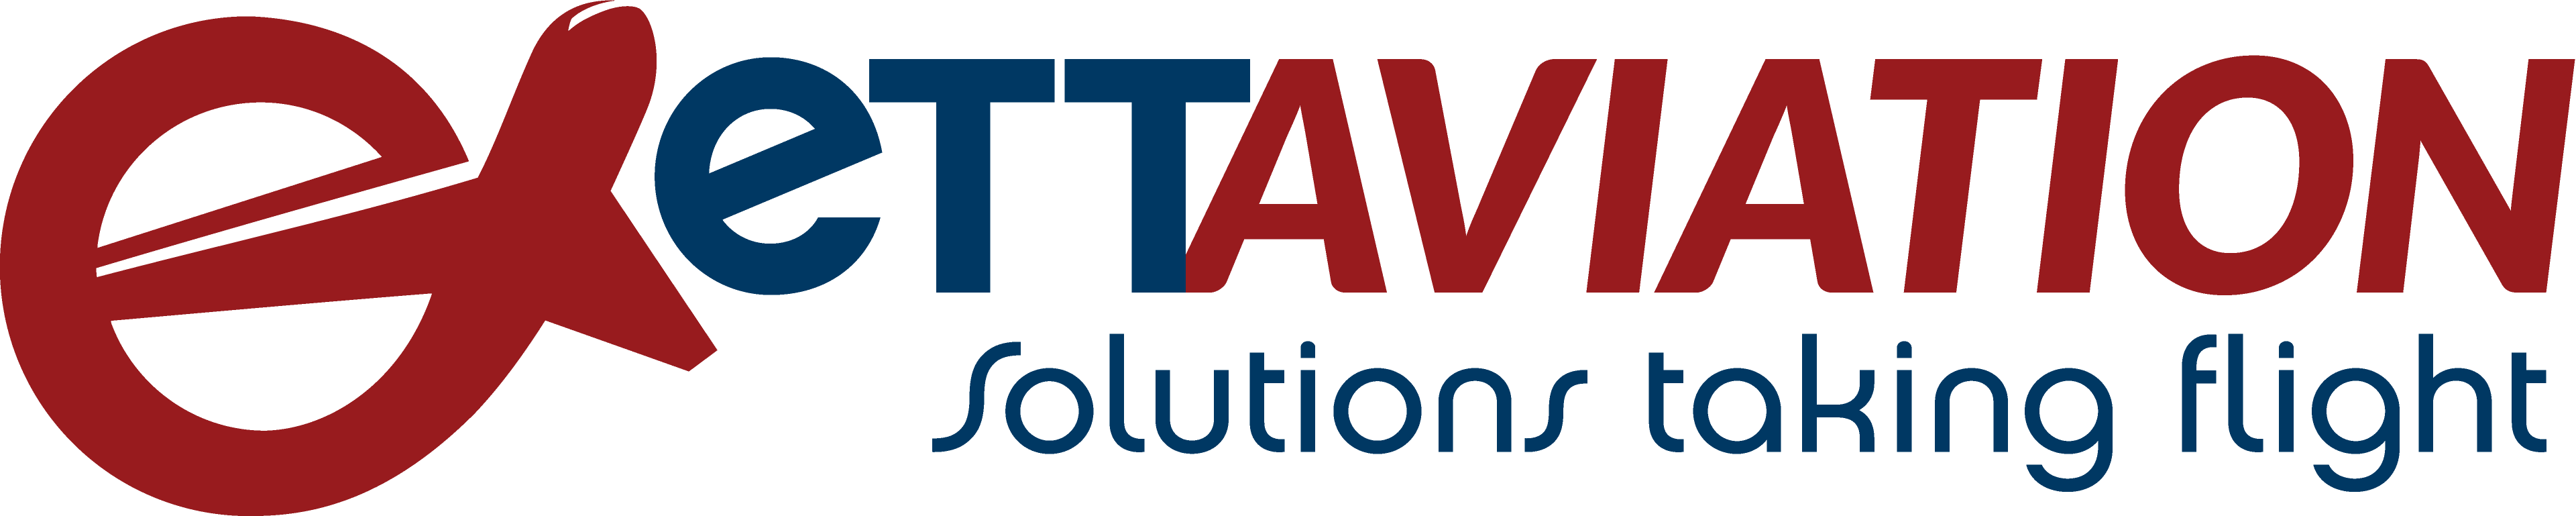 Company Logo for eTT Aviation'